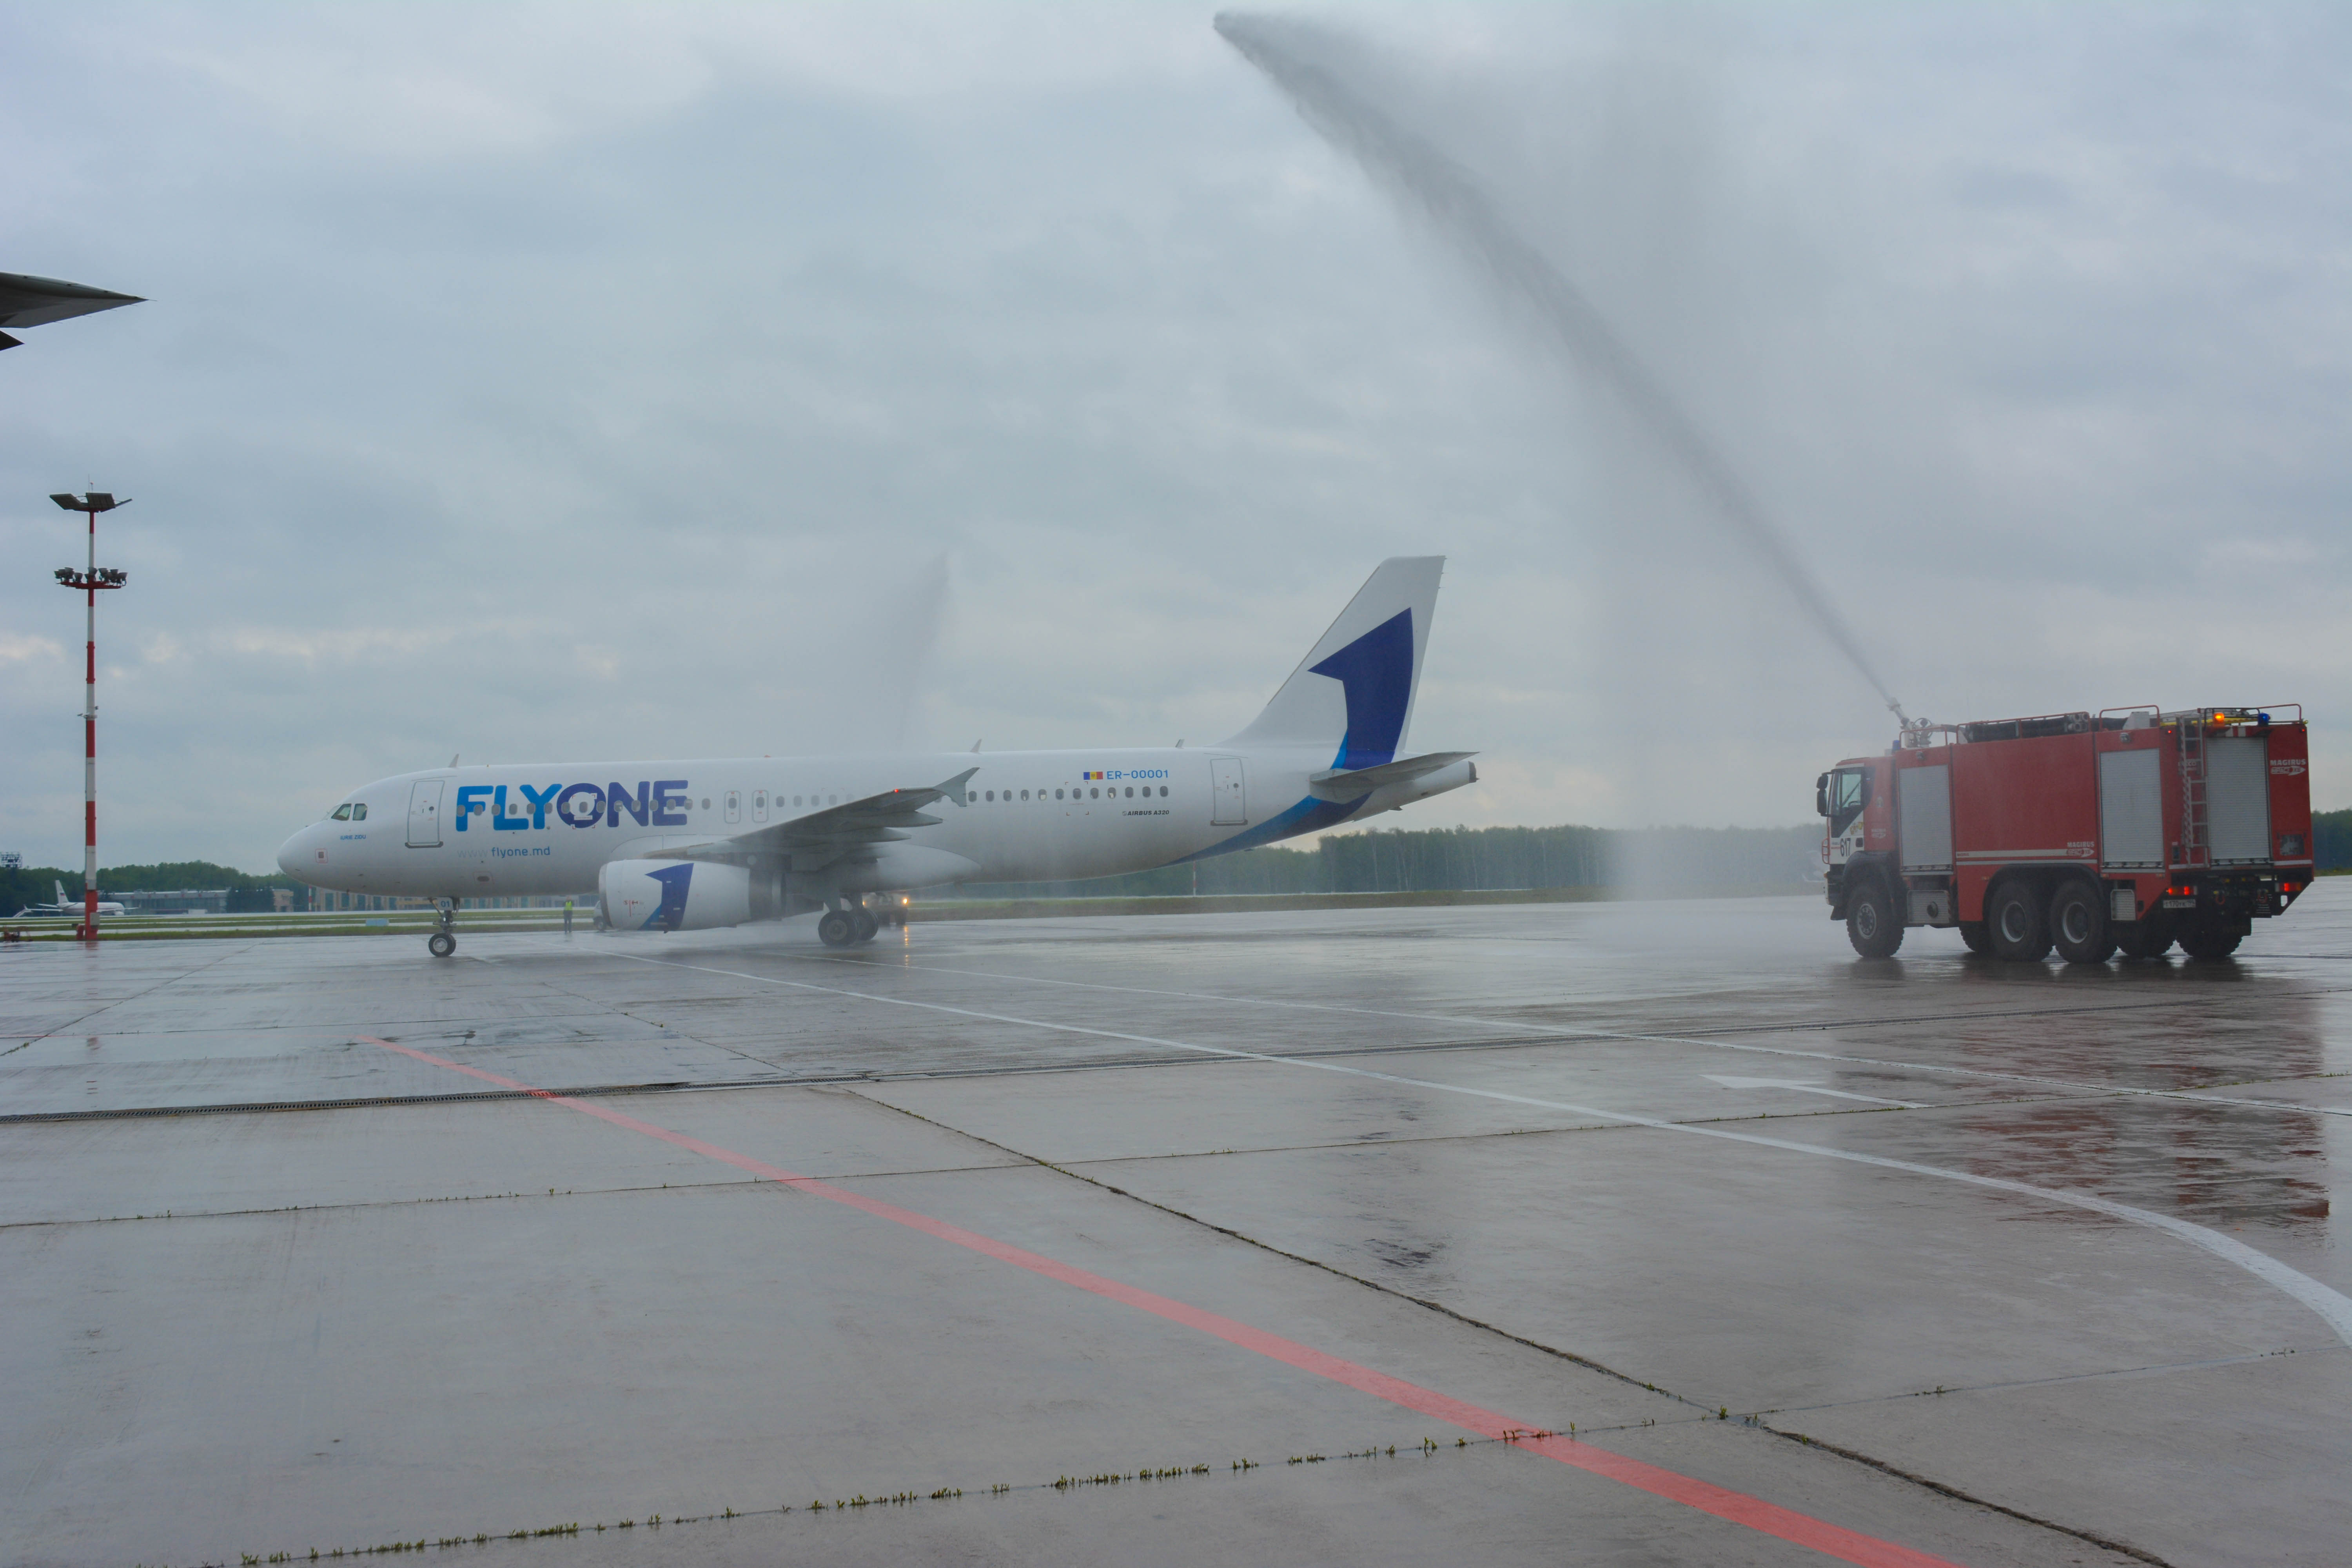 Аэропорт Внуково приветствует нового партнера – авиакомпанию FlyOne! | Международный аэропорт Внуково